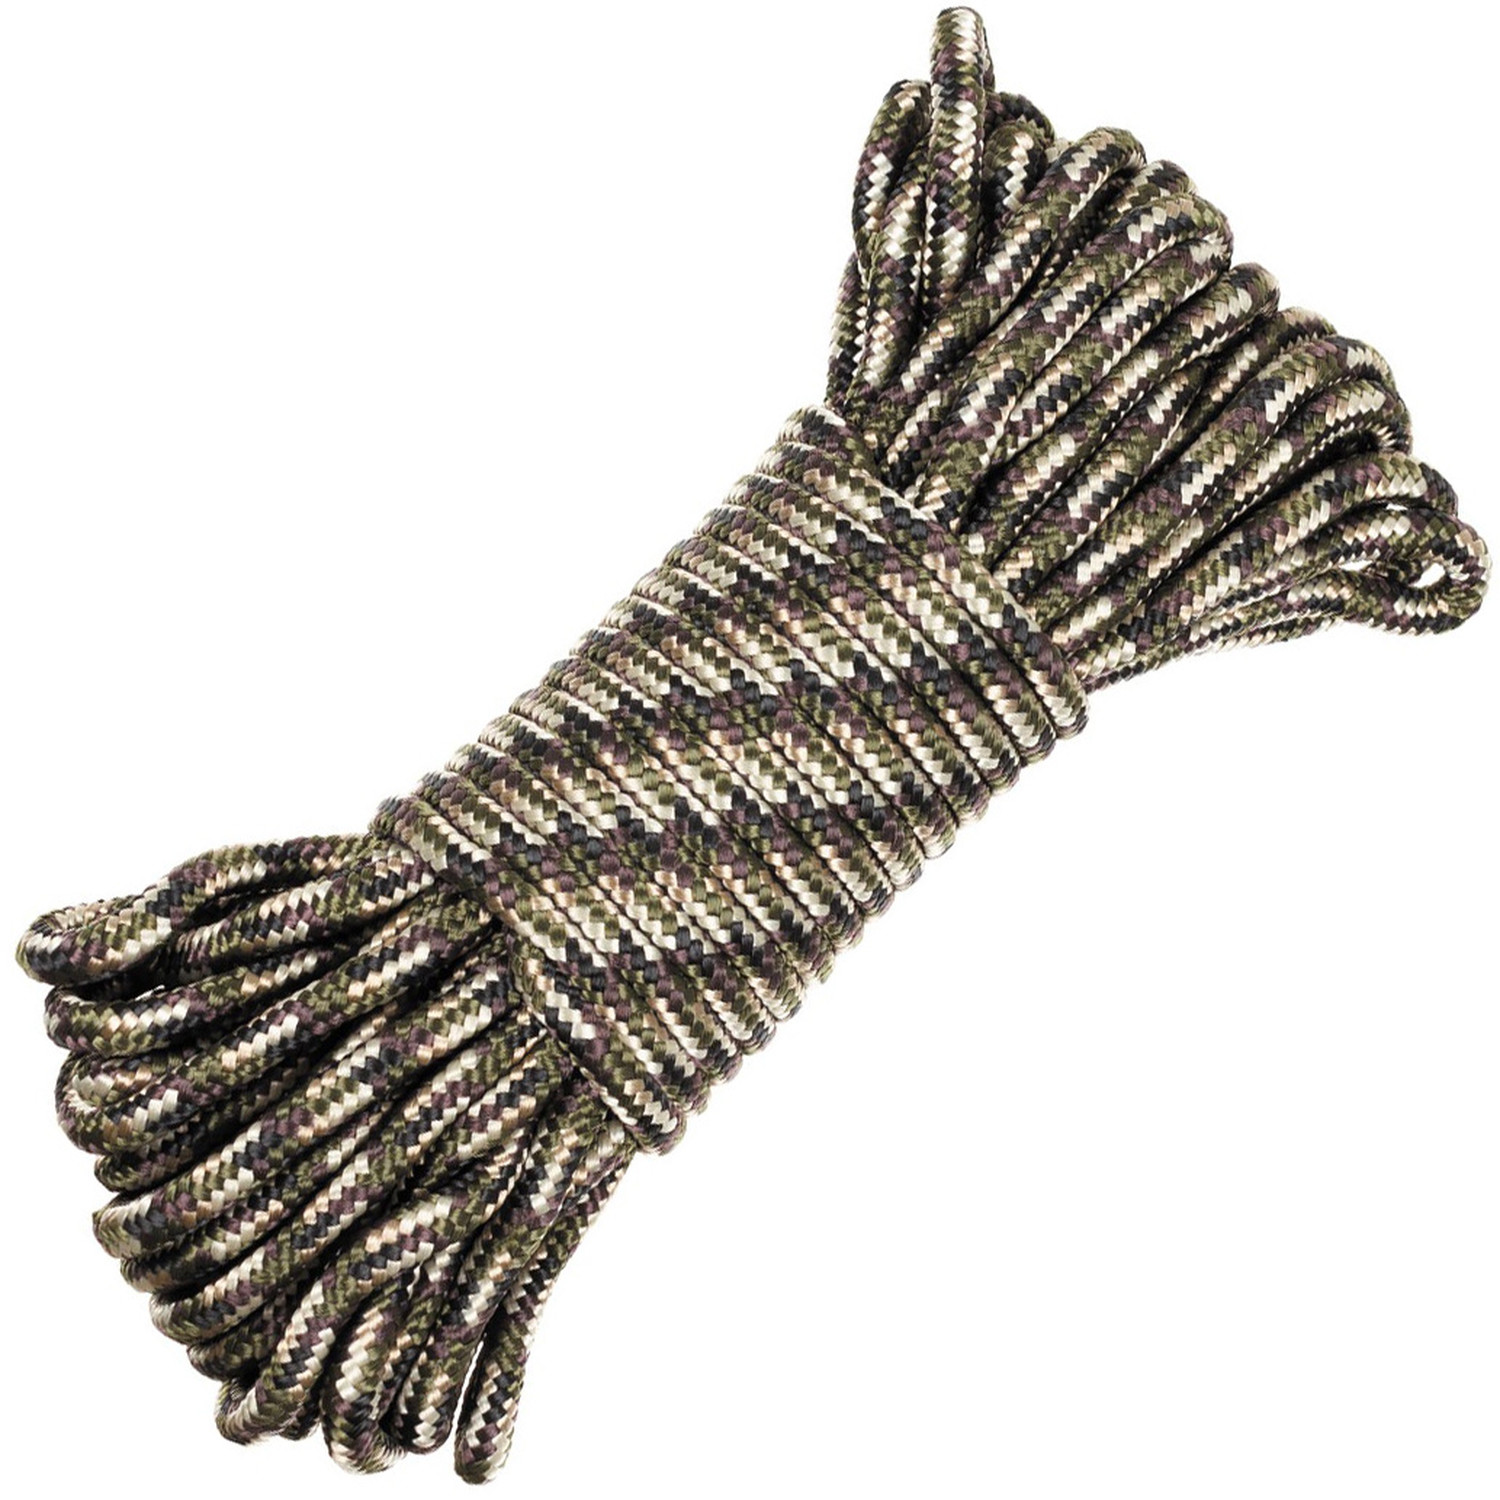 Seil in Tarnfarben (Camo) mit Durchmesser 9 mm, 15 m lang